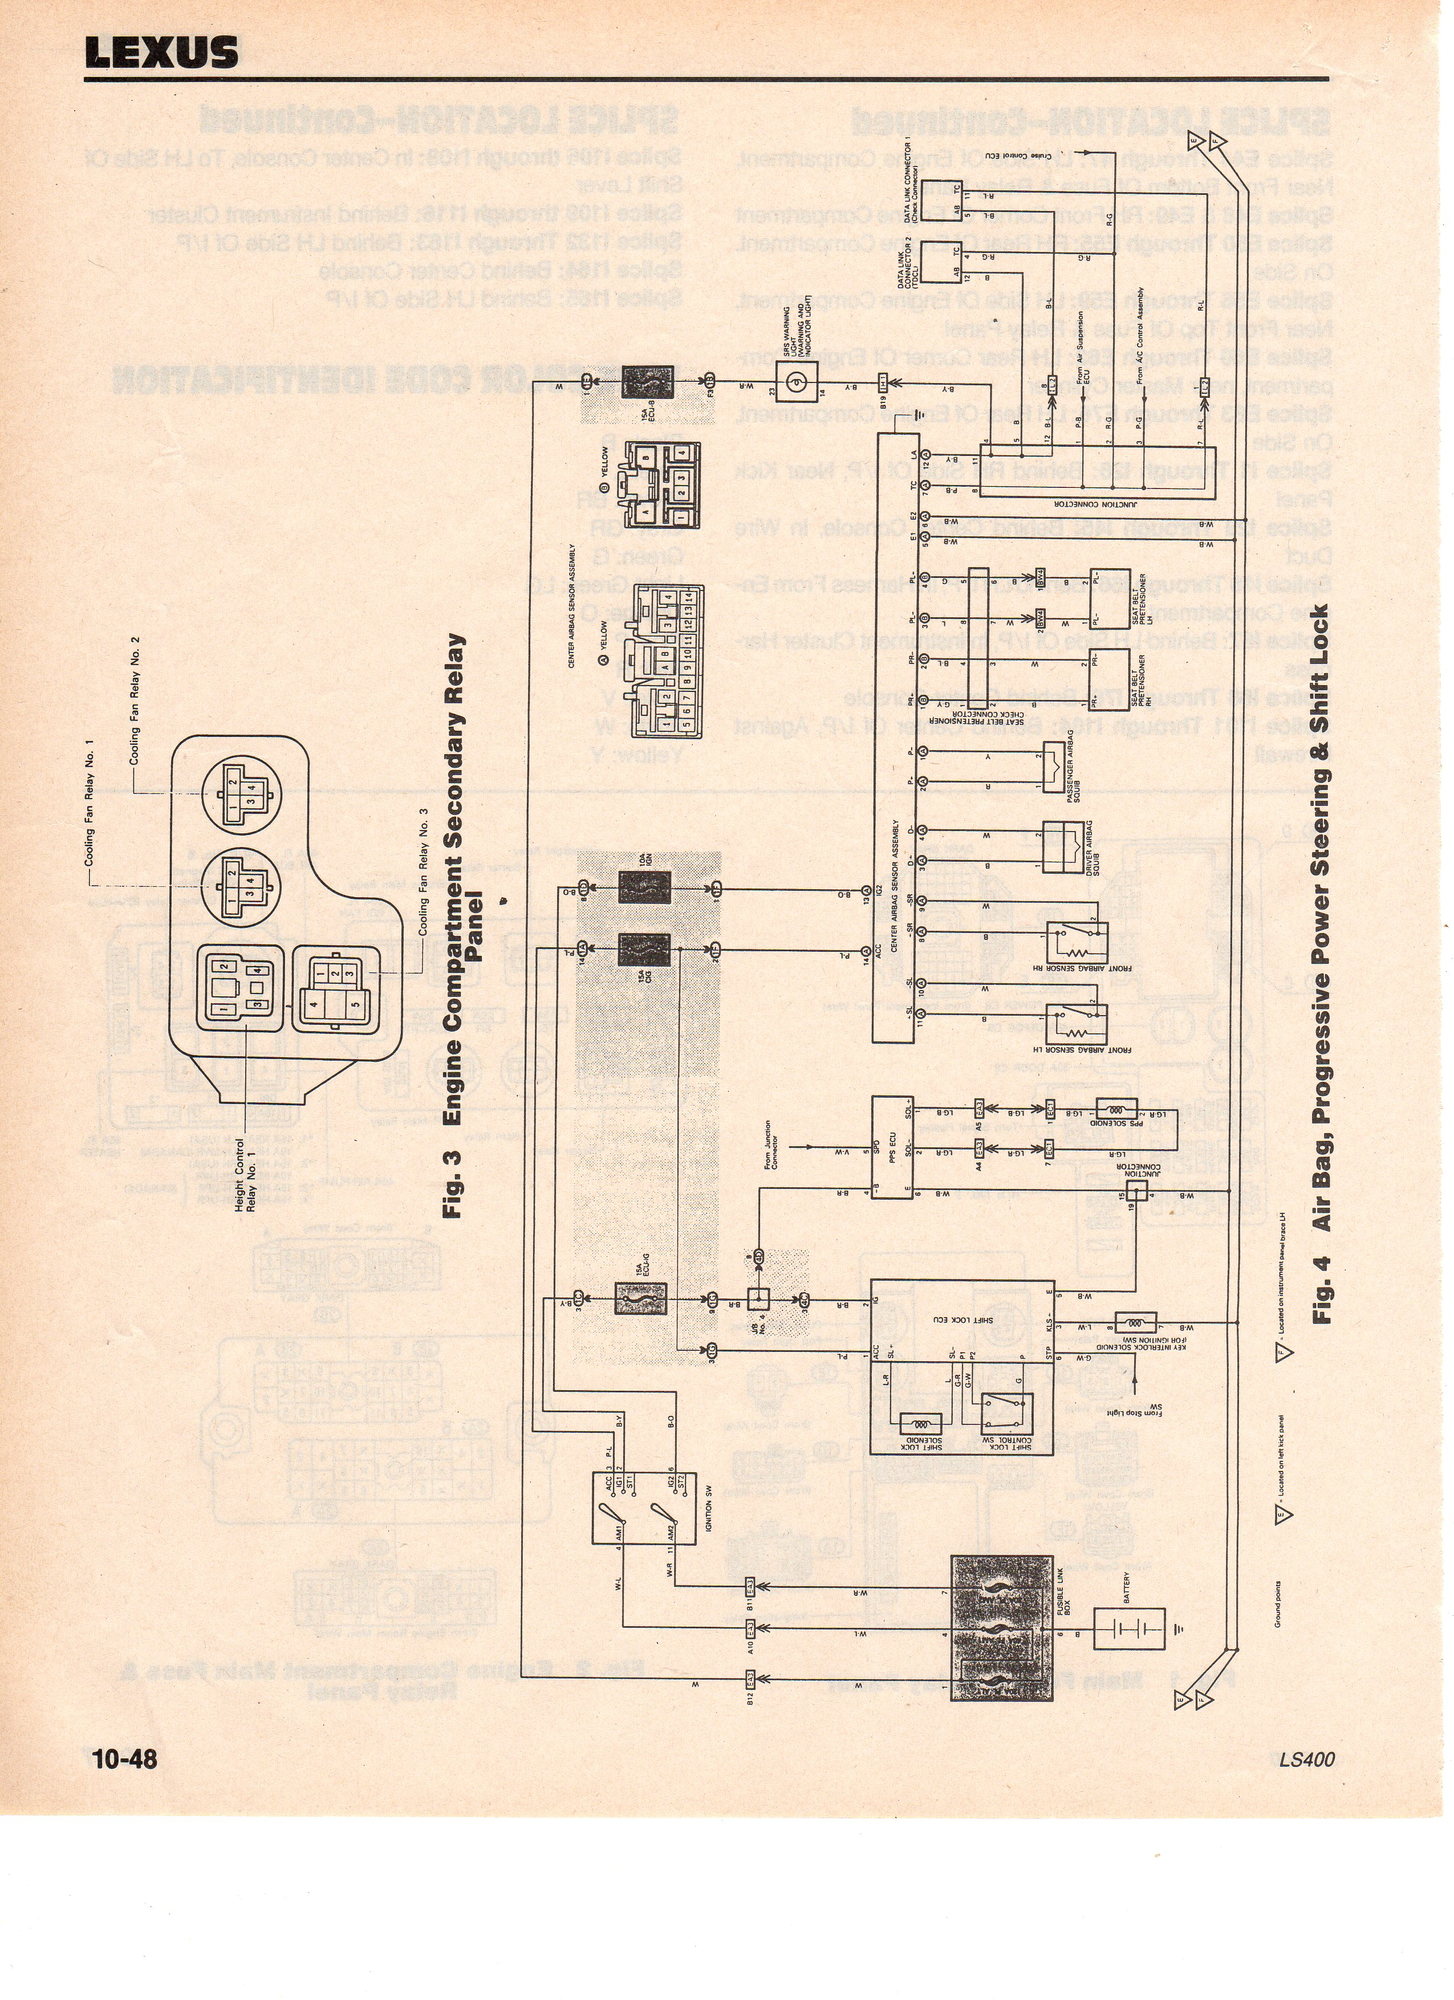 1994 ls400 wiring diagrams!! Finally! 1uzfe swap info! - ClubLexus